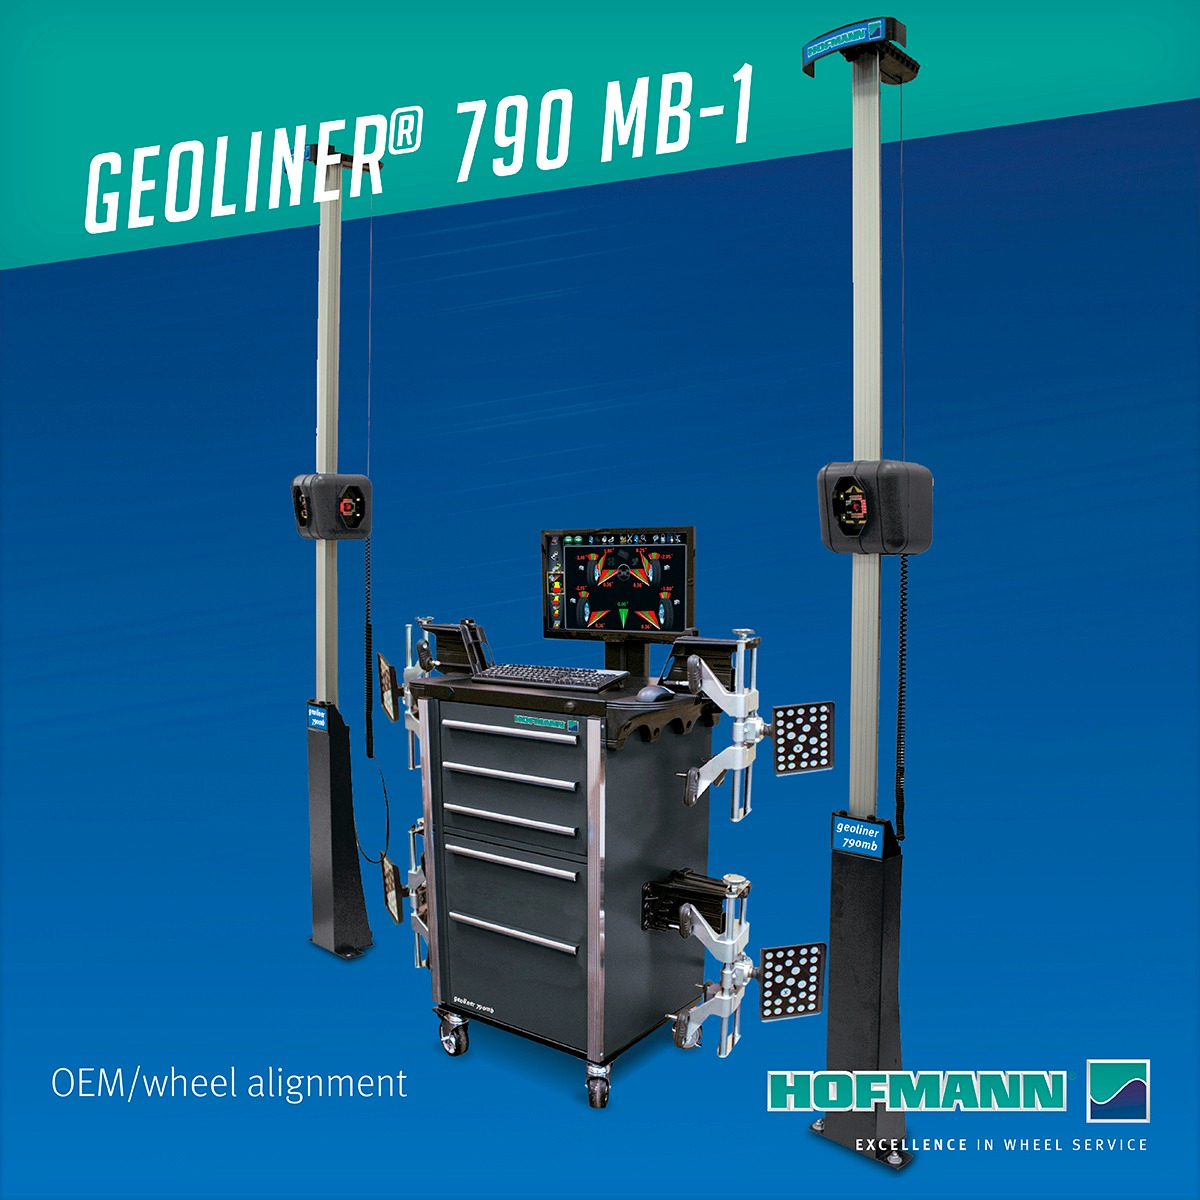 geoliner® 790 MB-1